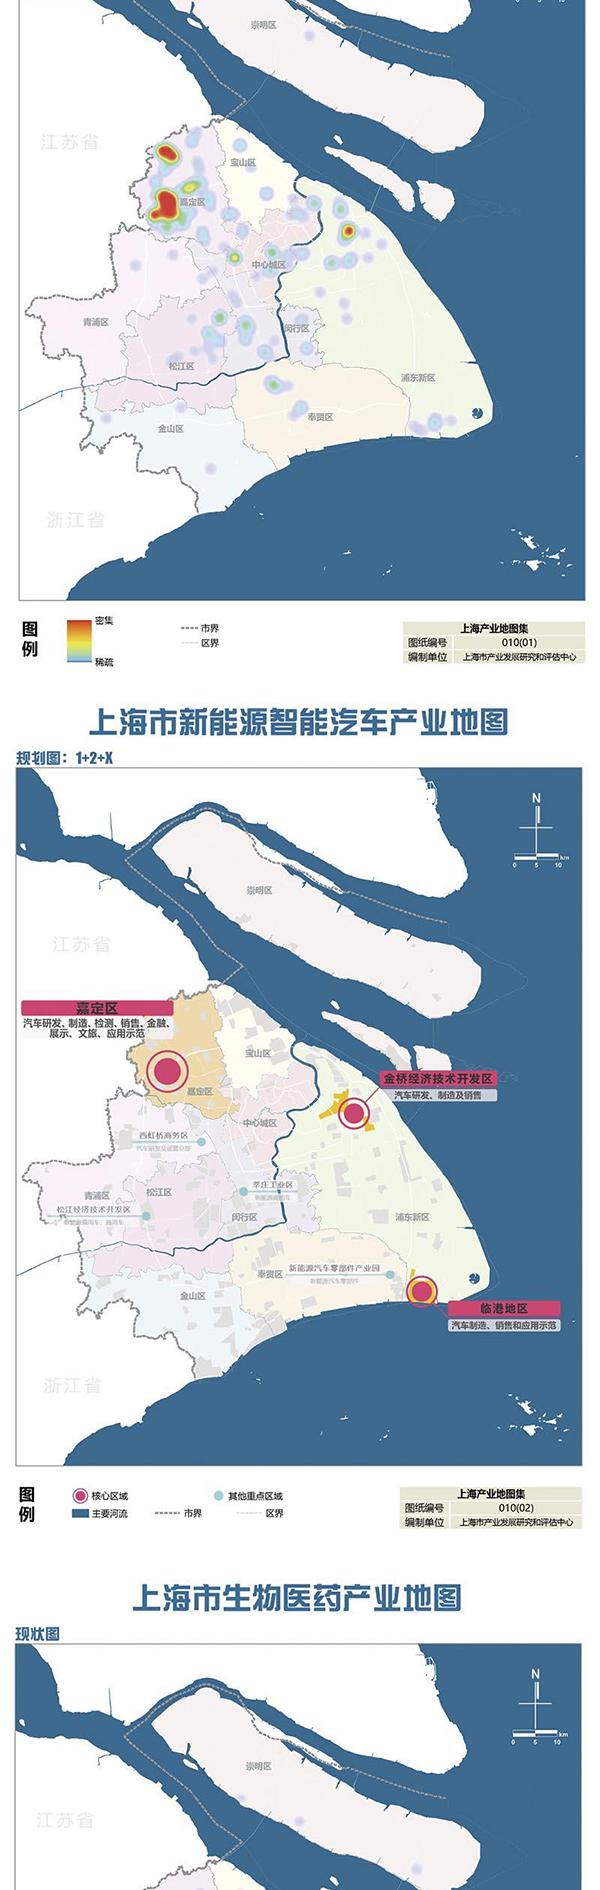 《上海市产业地图》正式出炉：未来产业发展的布局图、作战图